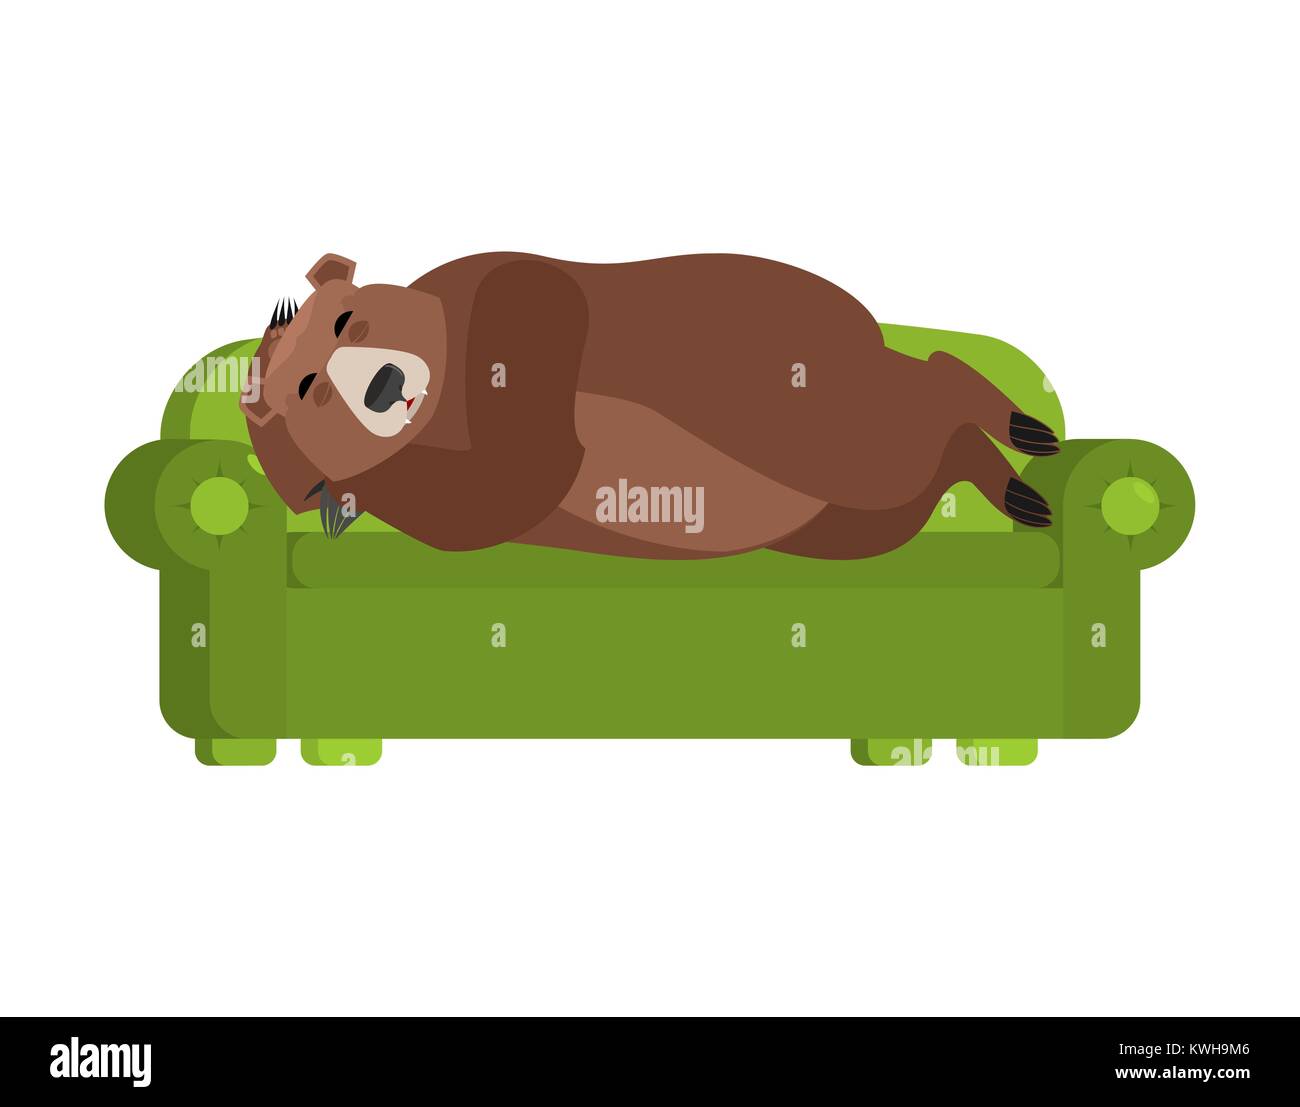 Bär schläft auf der Couch. Grizzly schlafend auf dem Bett. Ein wildes Tier schlummert. Vector Illustration Stock Vektor